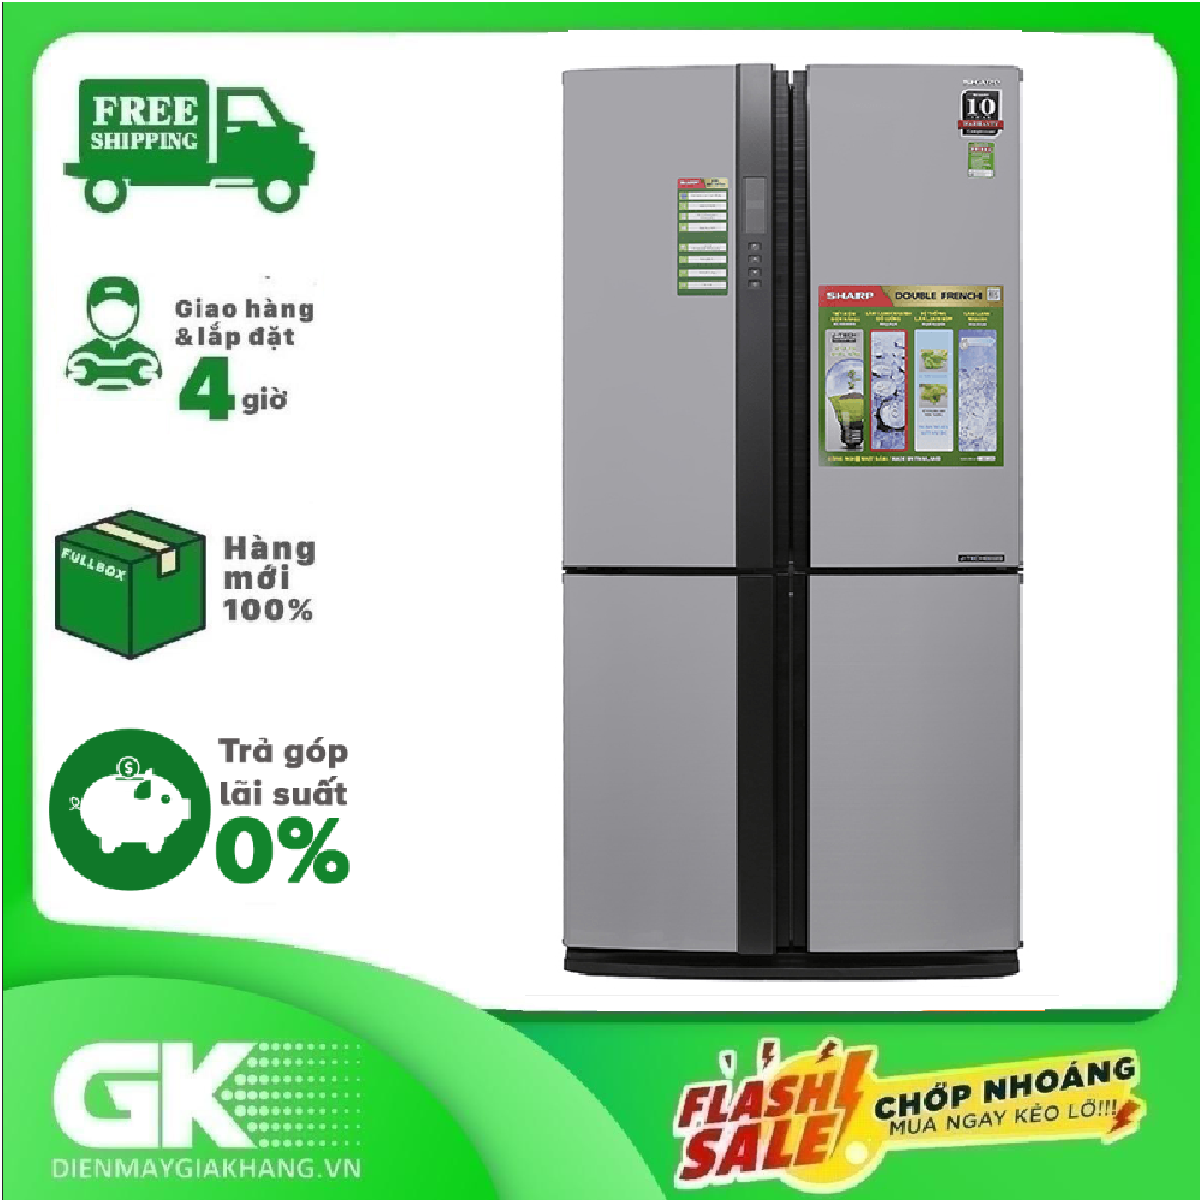 TRẢ GÓP 0% – TRẢ GÓP 0% – Tủ lạnh Sharp side by side Inverter 556 lít SJ-FX630V-ST – Hàng mới 100% nguyên đai nguyên kiện